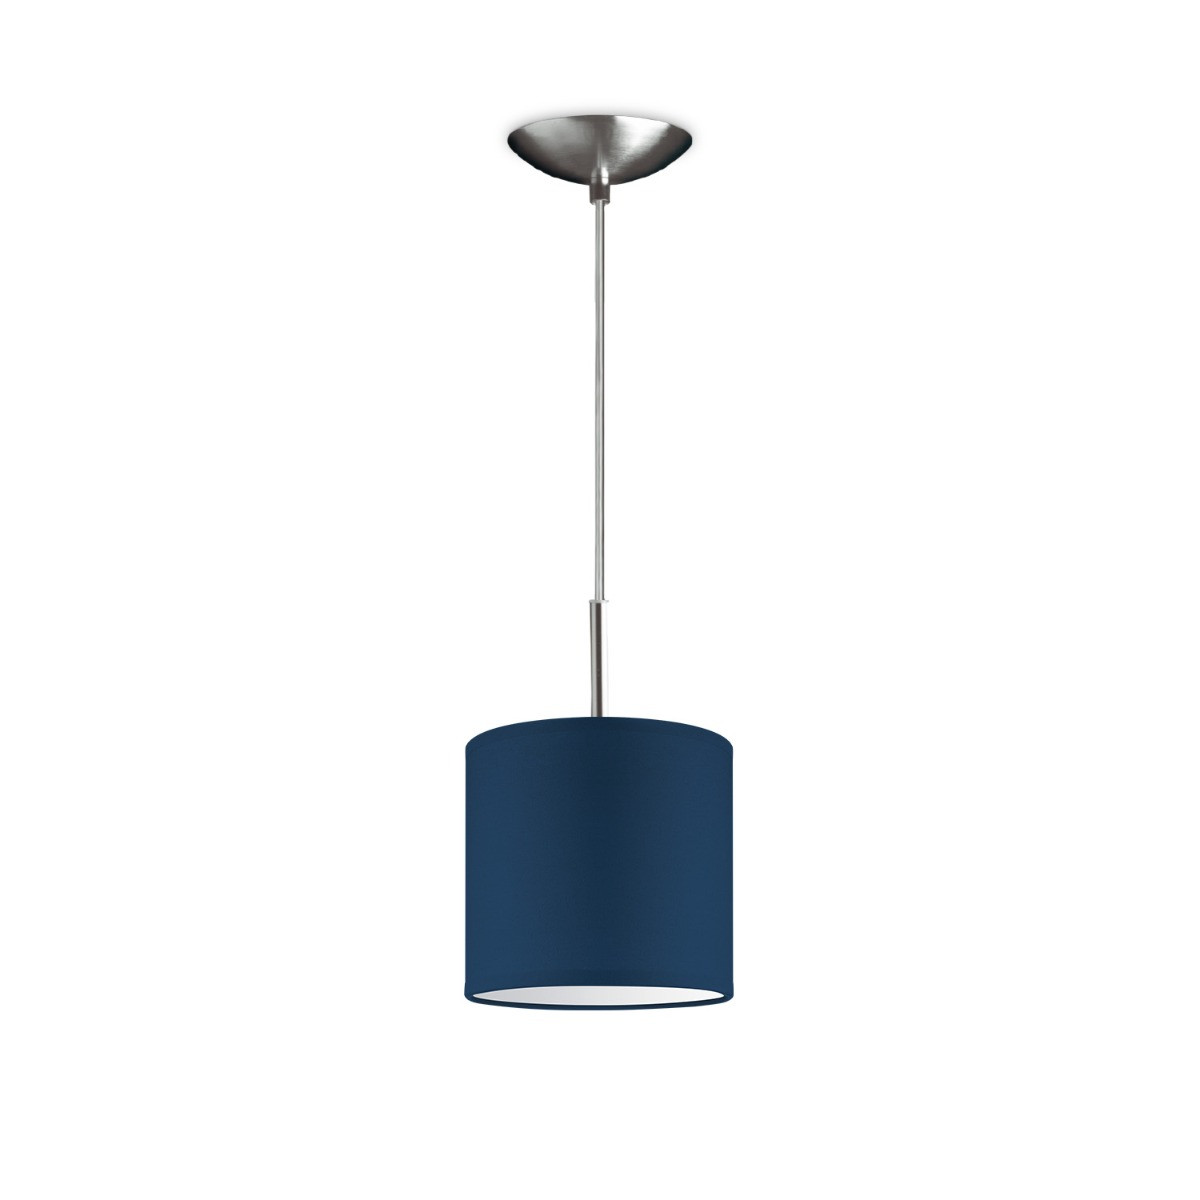 Light depot - hanglamp tube deluxe bling Ø 16 cm - blauw - Outlet